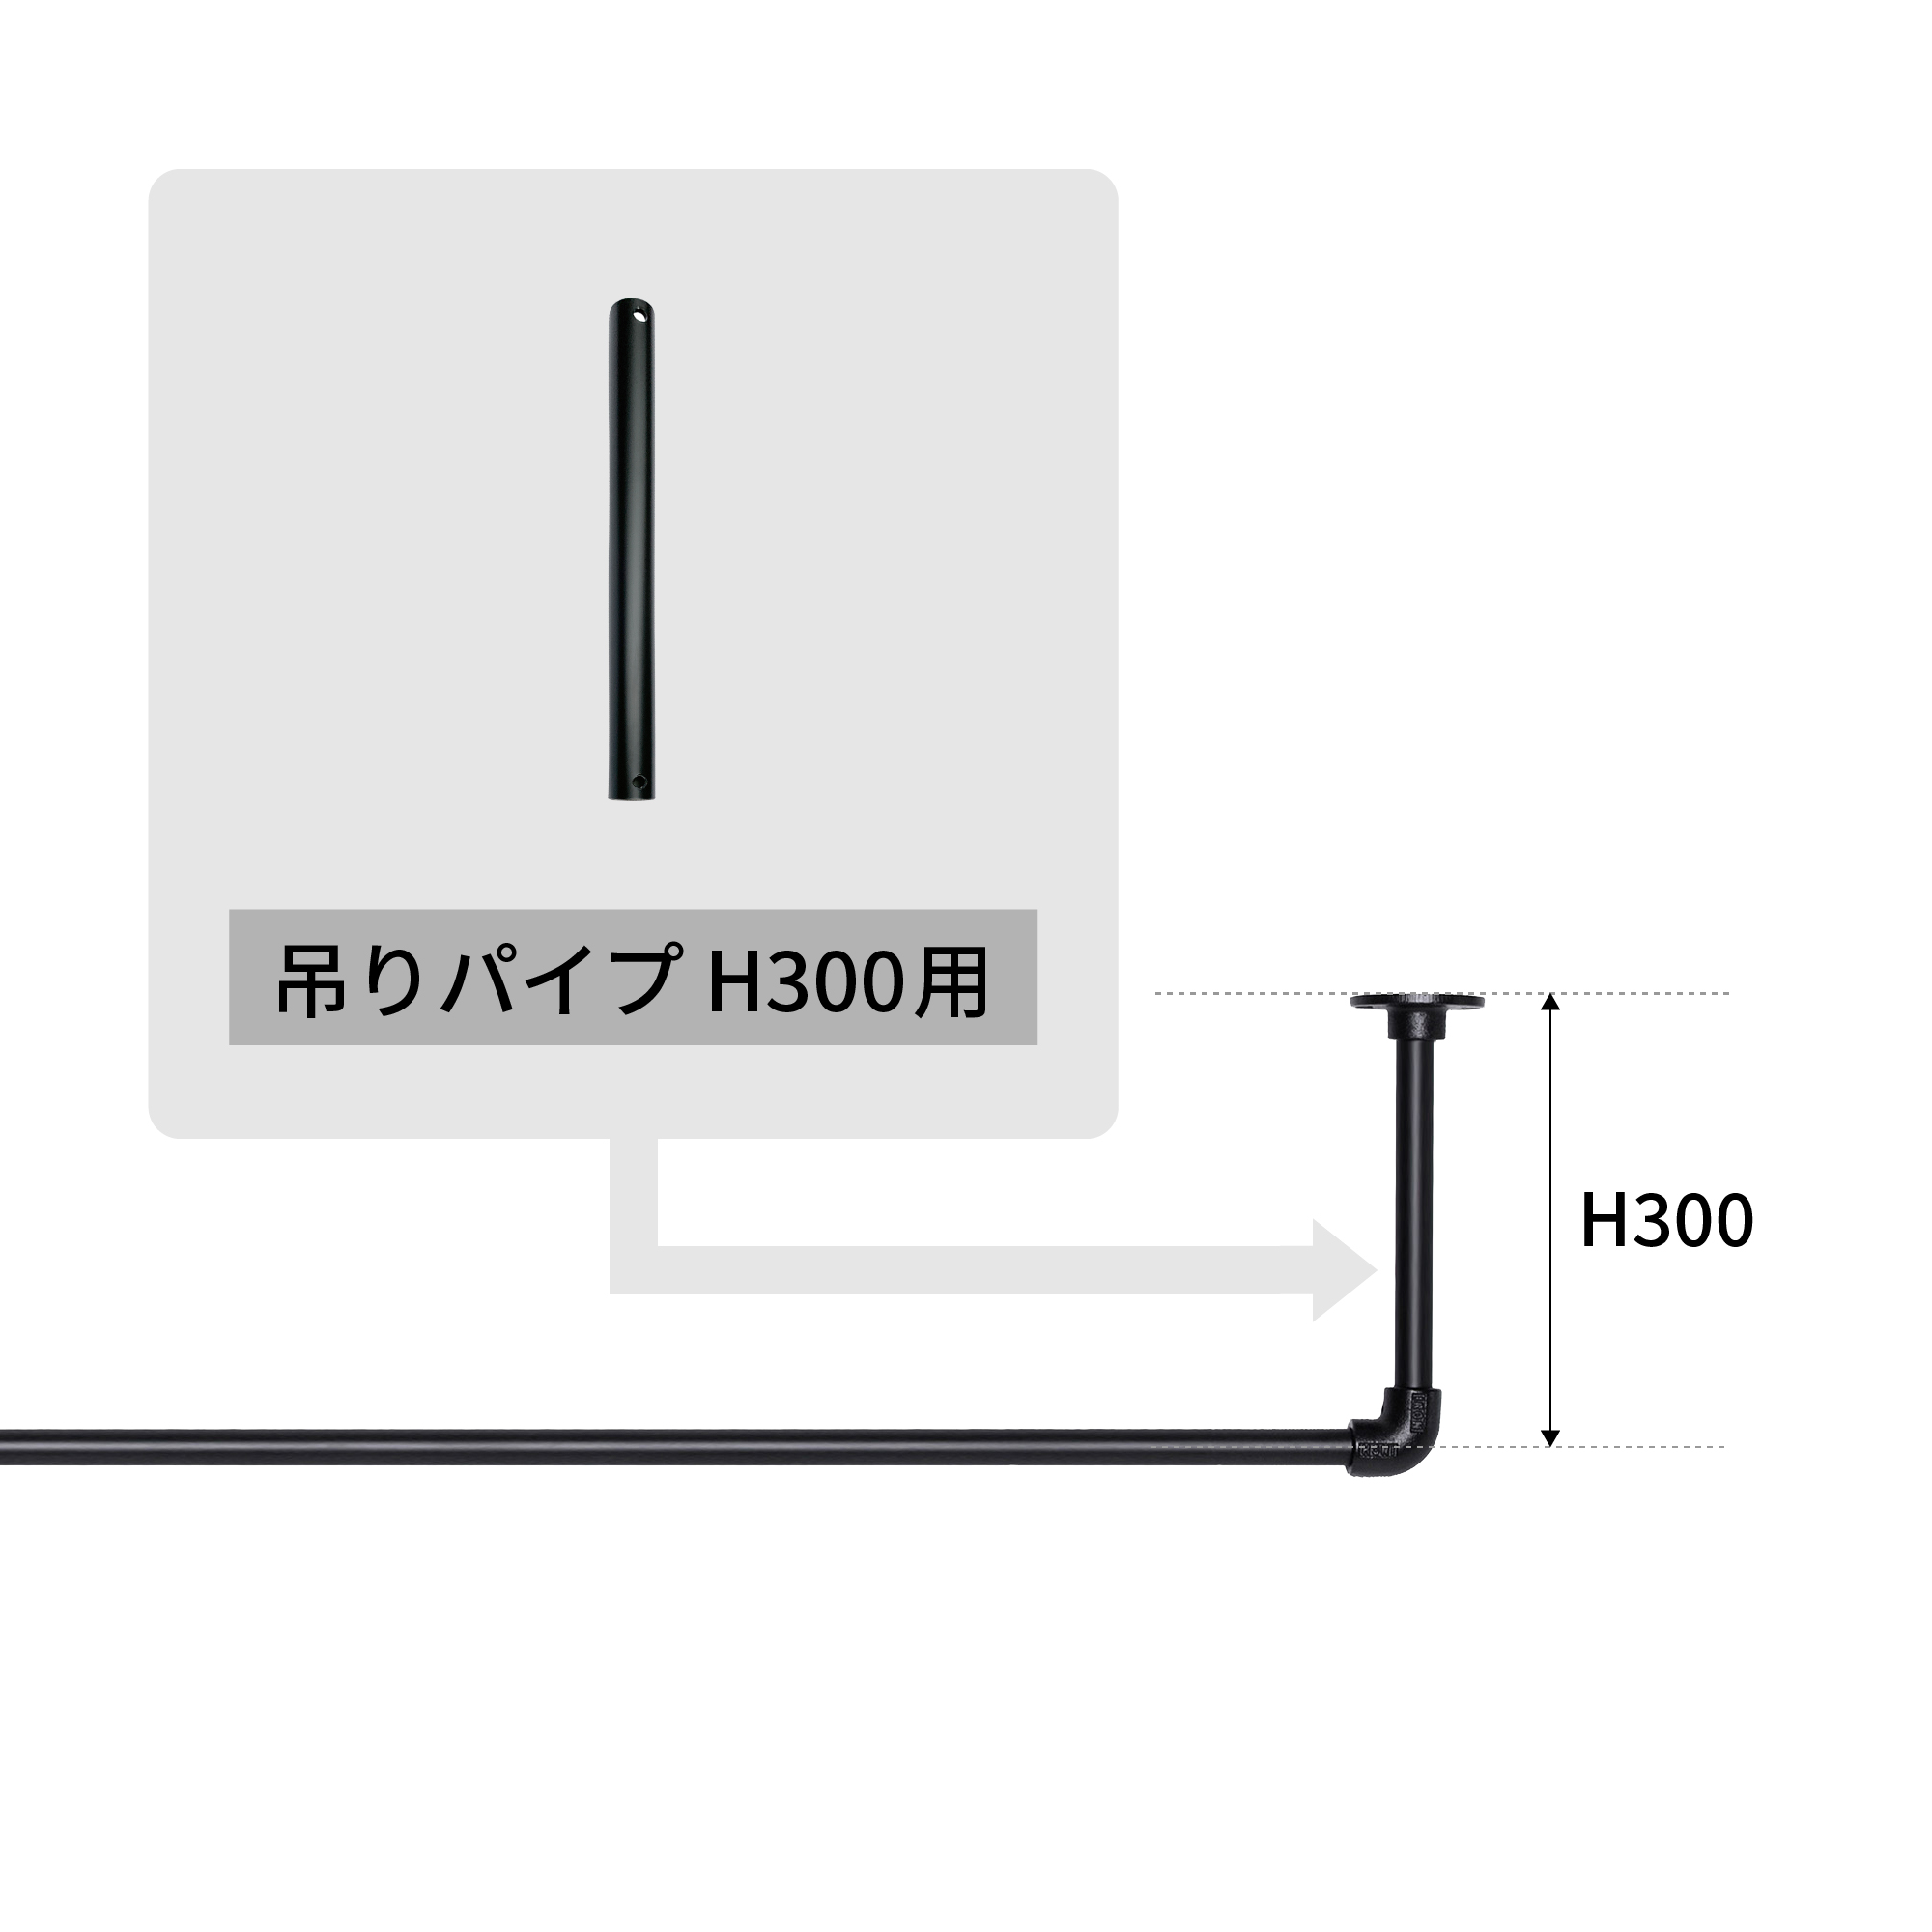 アイアンハンガーパイプ 吊りパイプ H300用 ブラック PS-HB008-29-G141